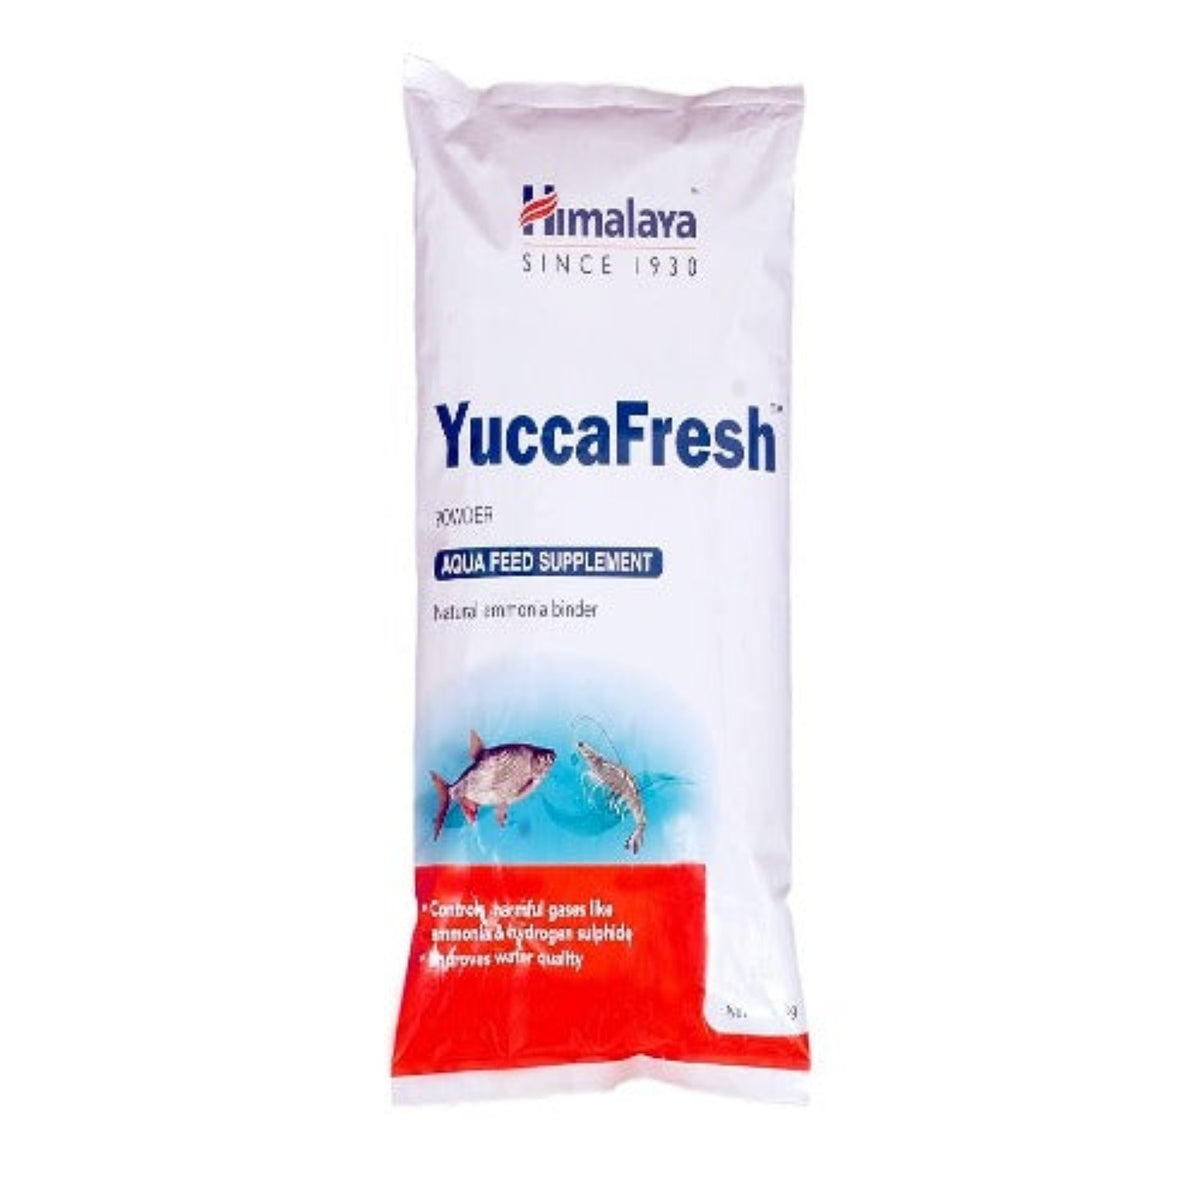 Himalaya Yucca Fresh Powder, натуральный связующий аммиак для рыб, креветок, креветок и других водных животных, 1 кг